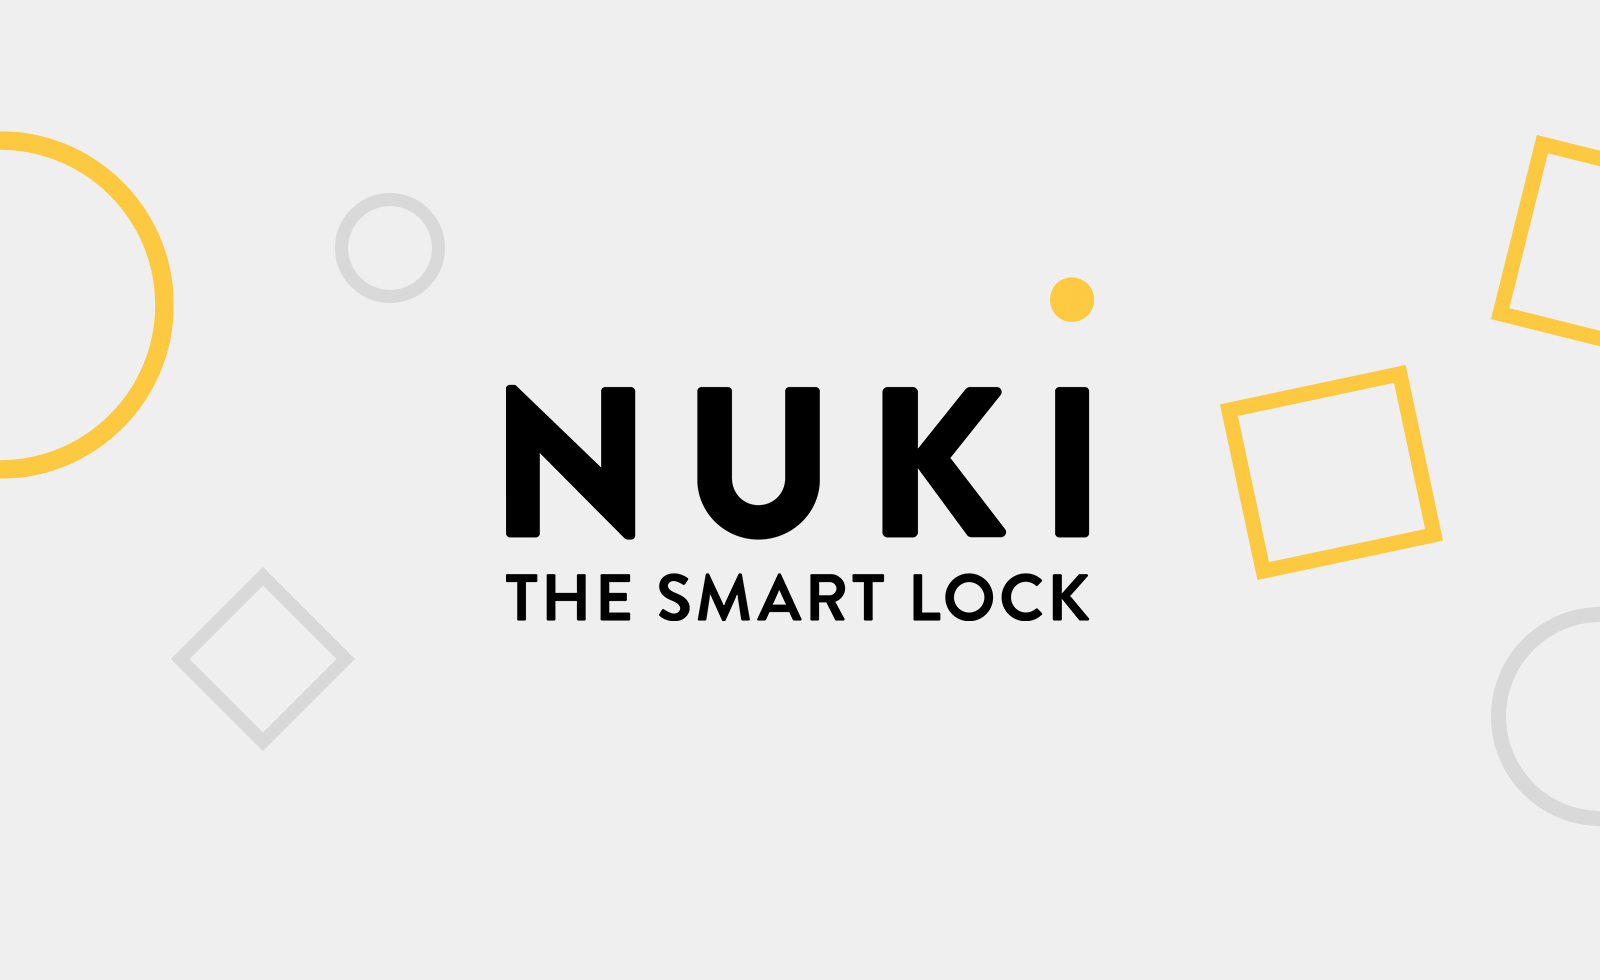 Kampagne von Niki auf Smartphone